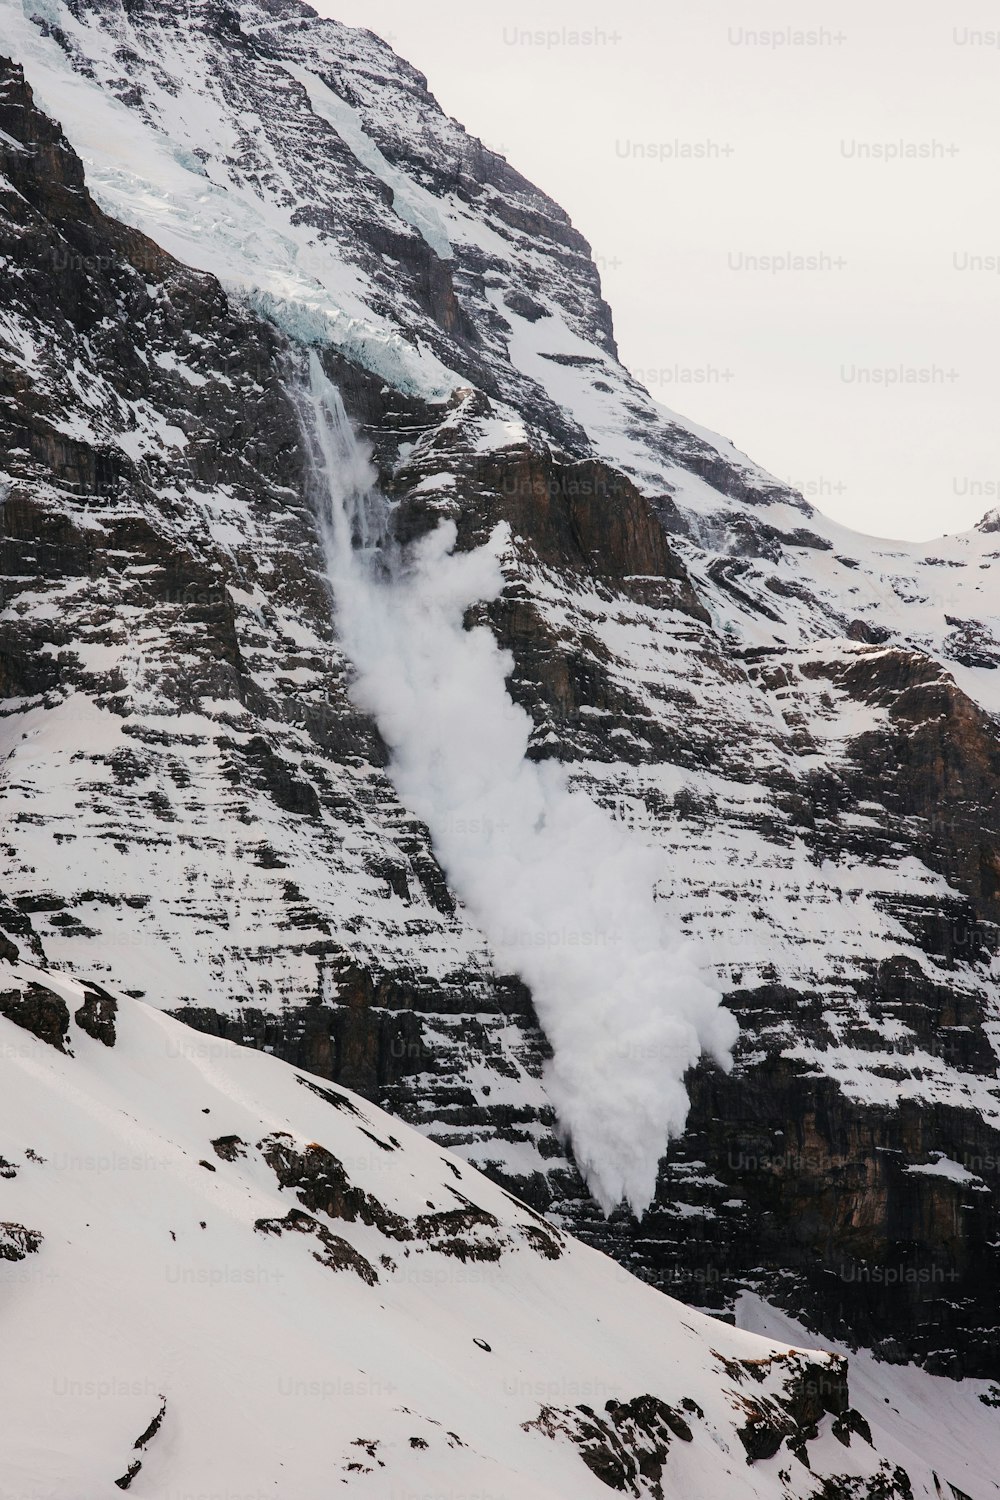 une montagne enneigée avec un petit jet d’eau qui en sort